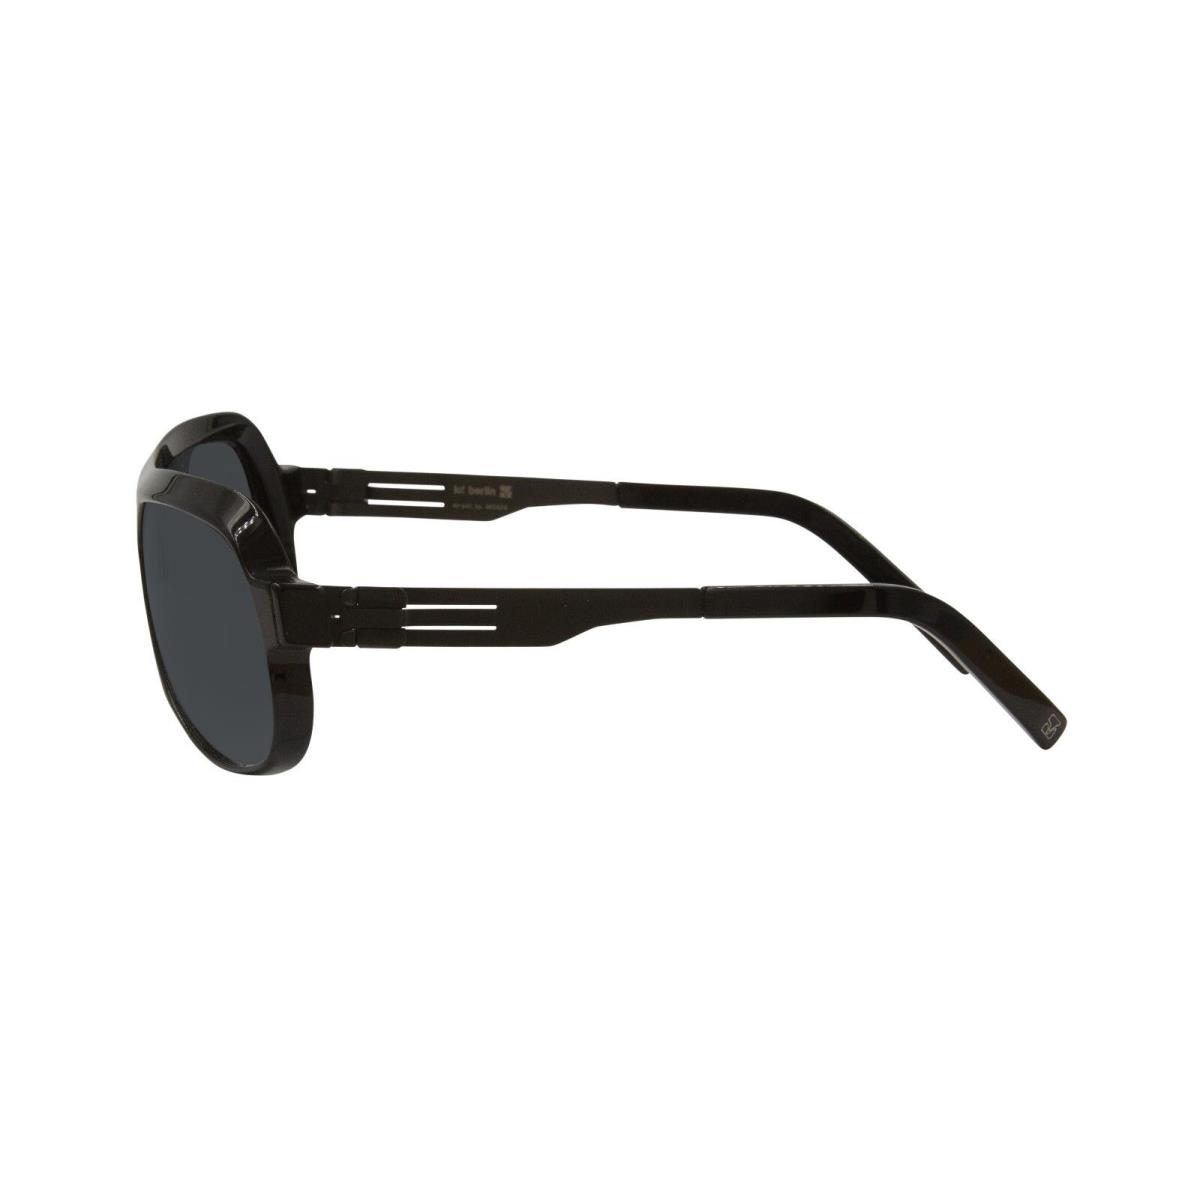 ic! berlin sunglasses MARCELLO - Black Frame, Black Lens